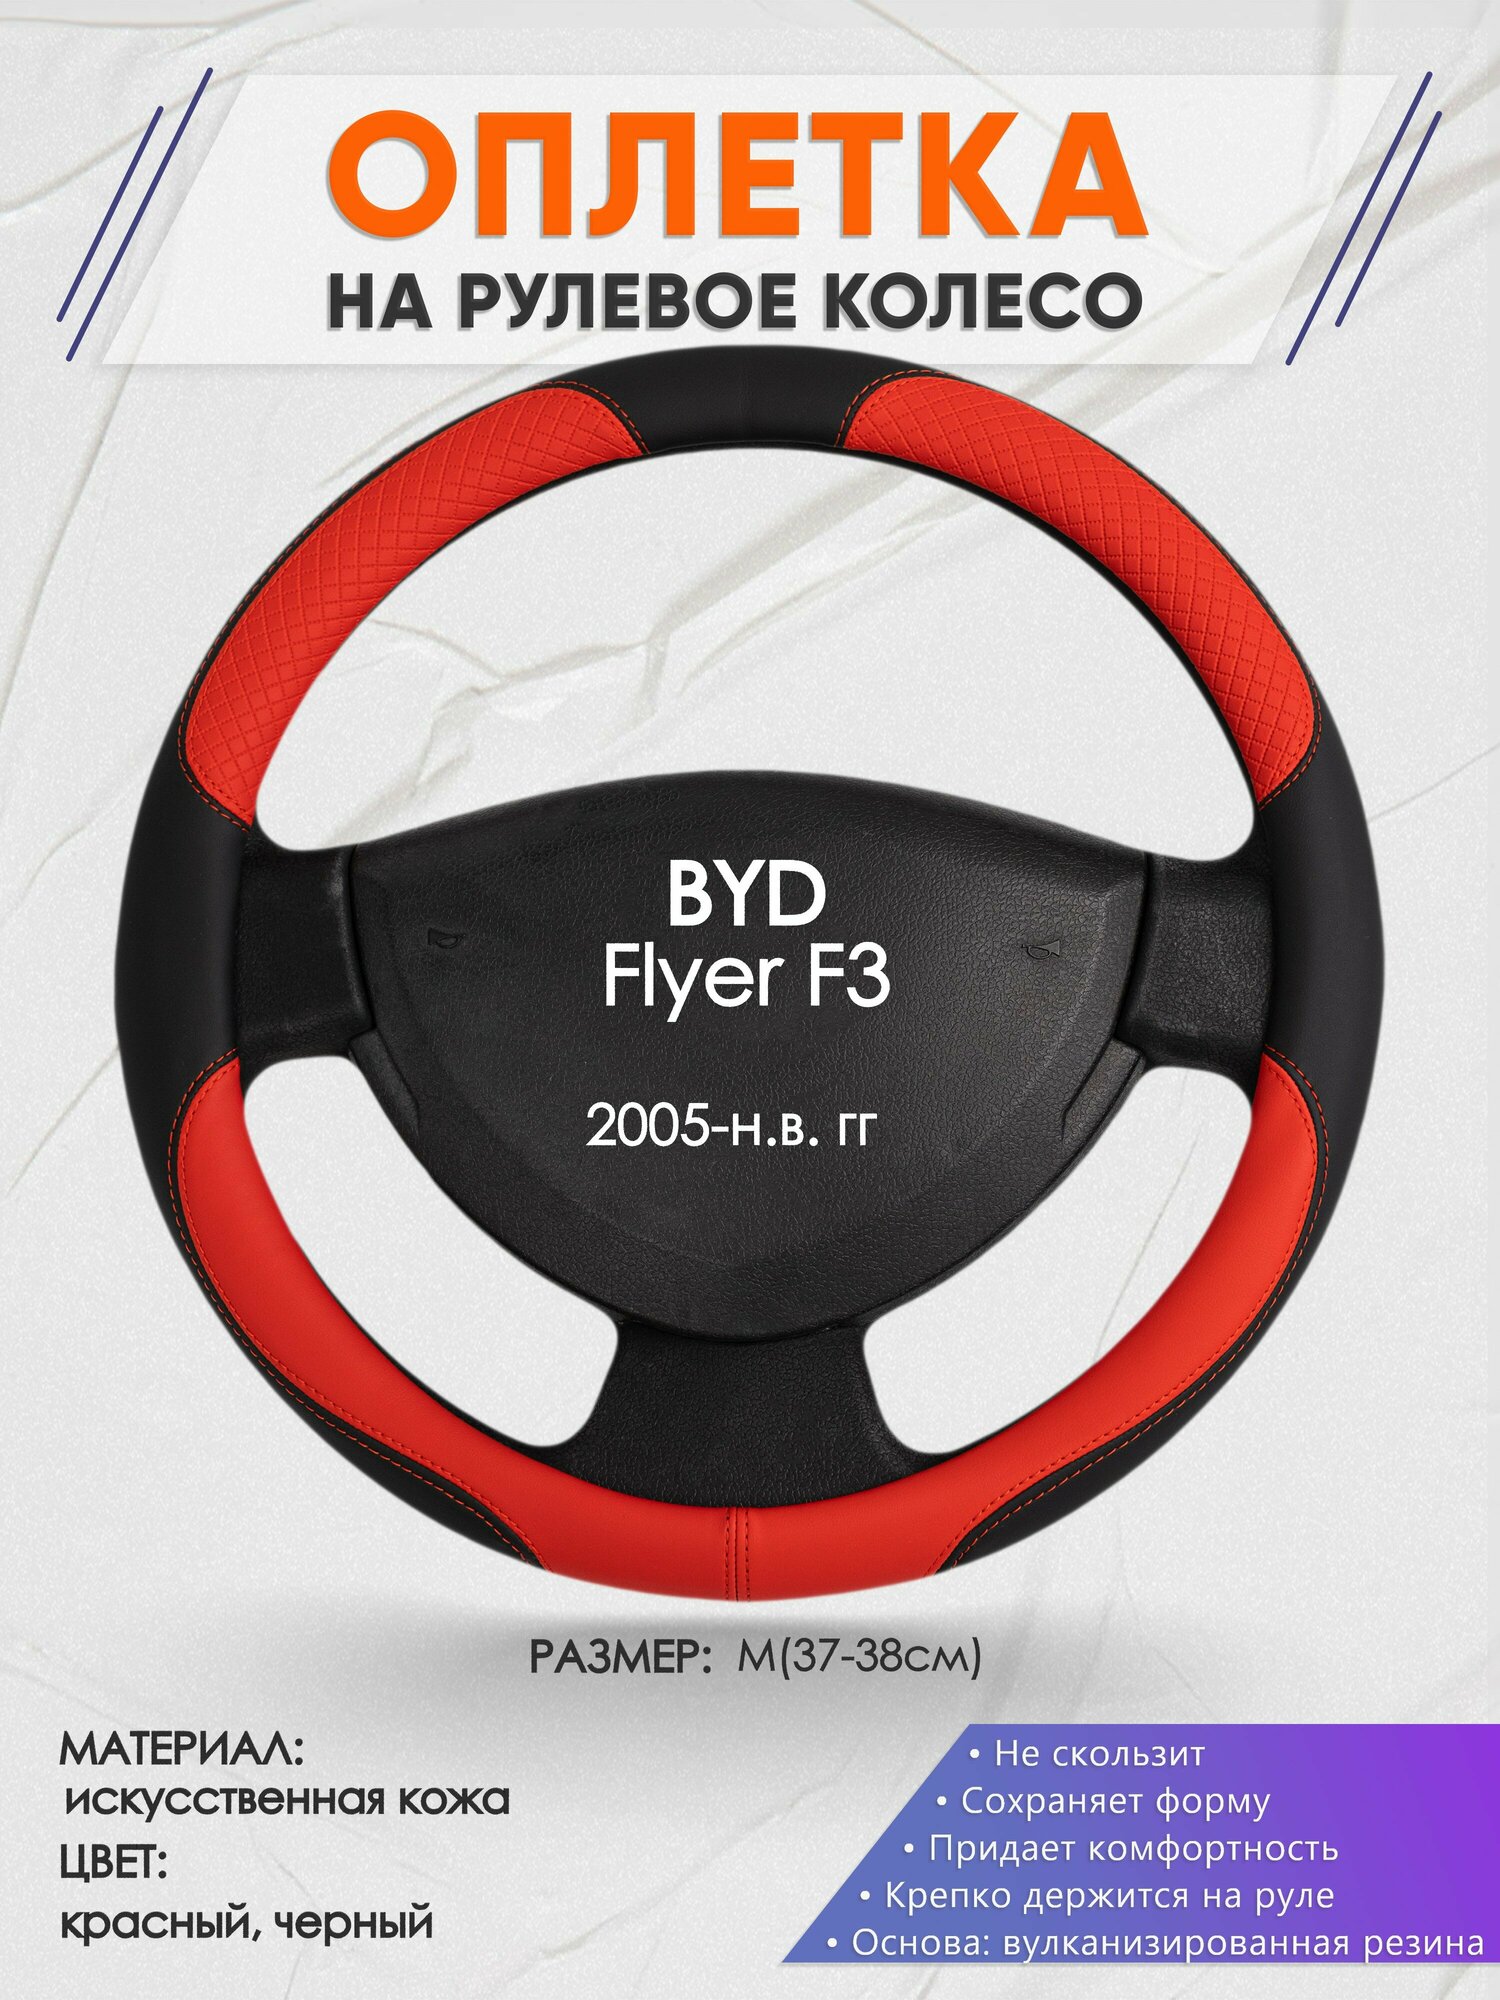 Оплетка на руль для BYD Flyer F3(БИД флайер ф3) 2005-н. в M(37-38см) Искусственная кожа 18